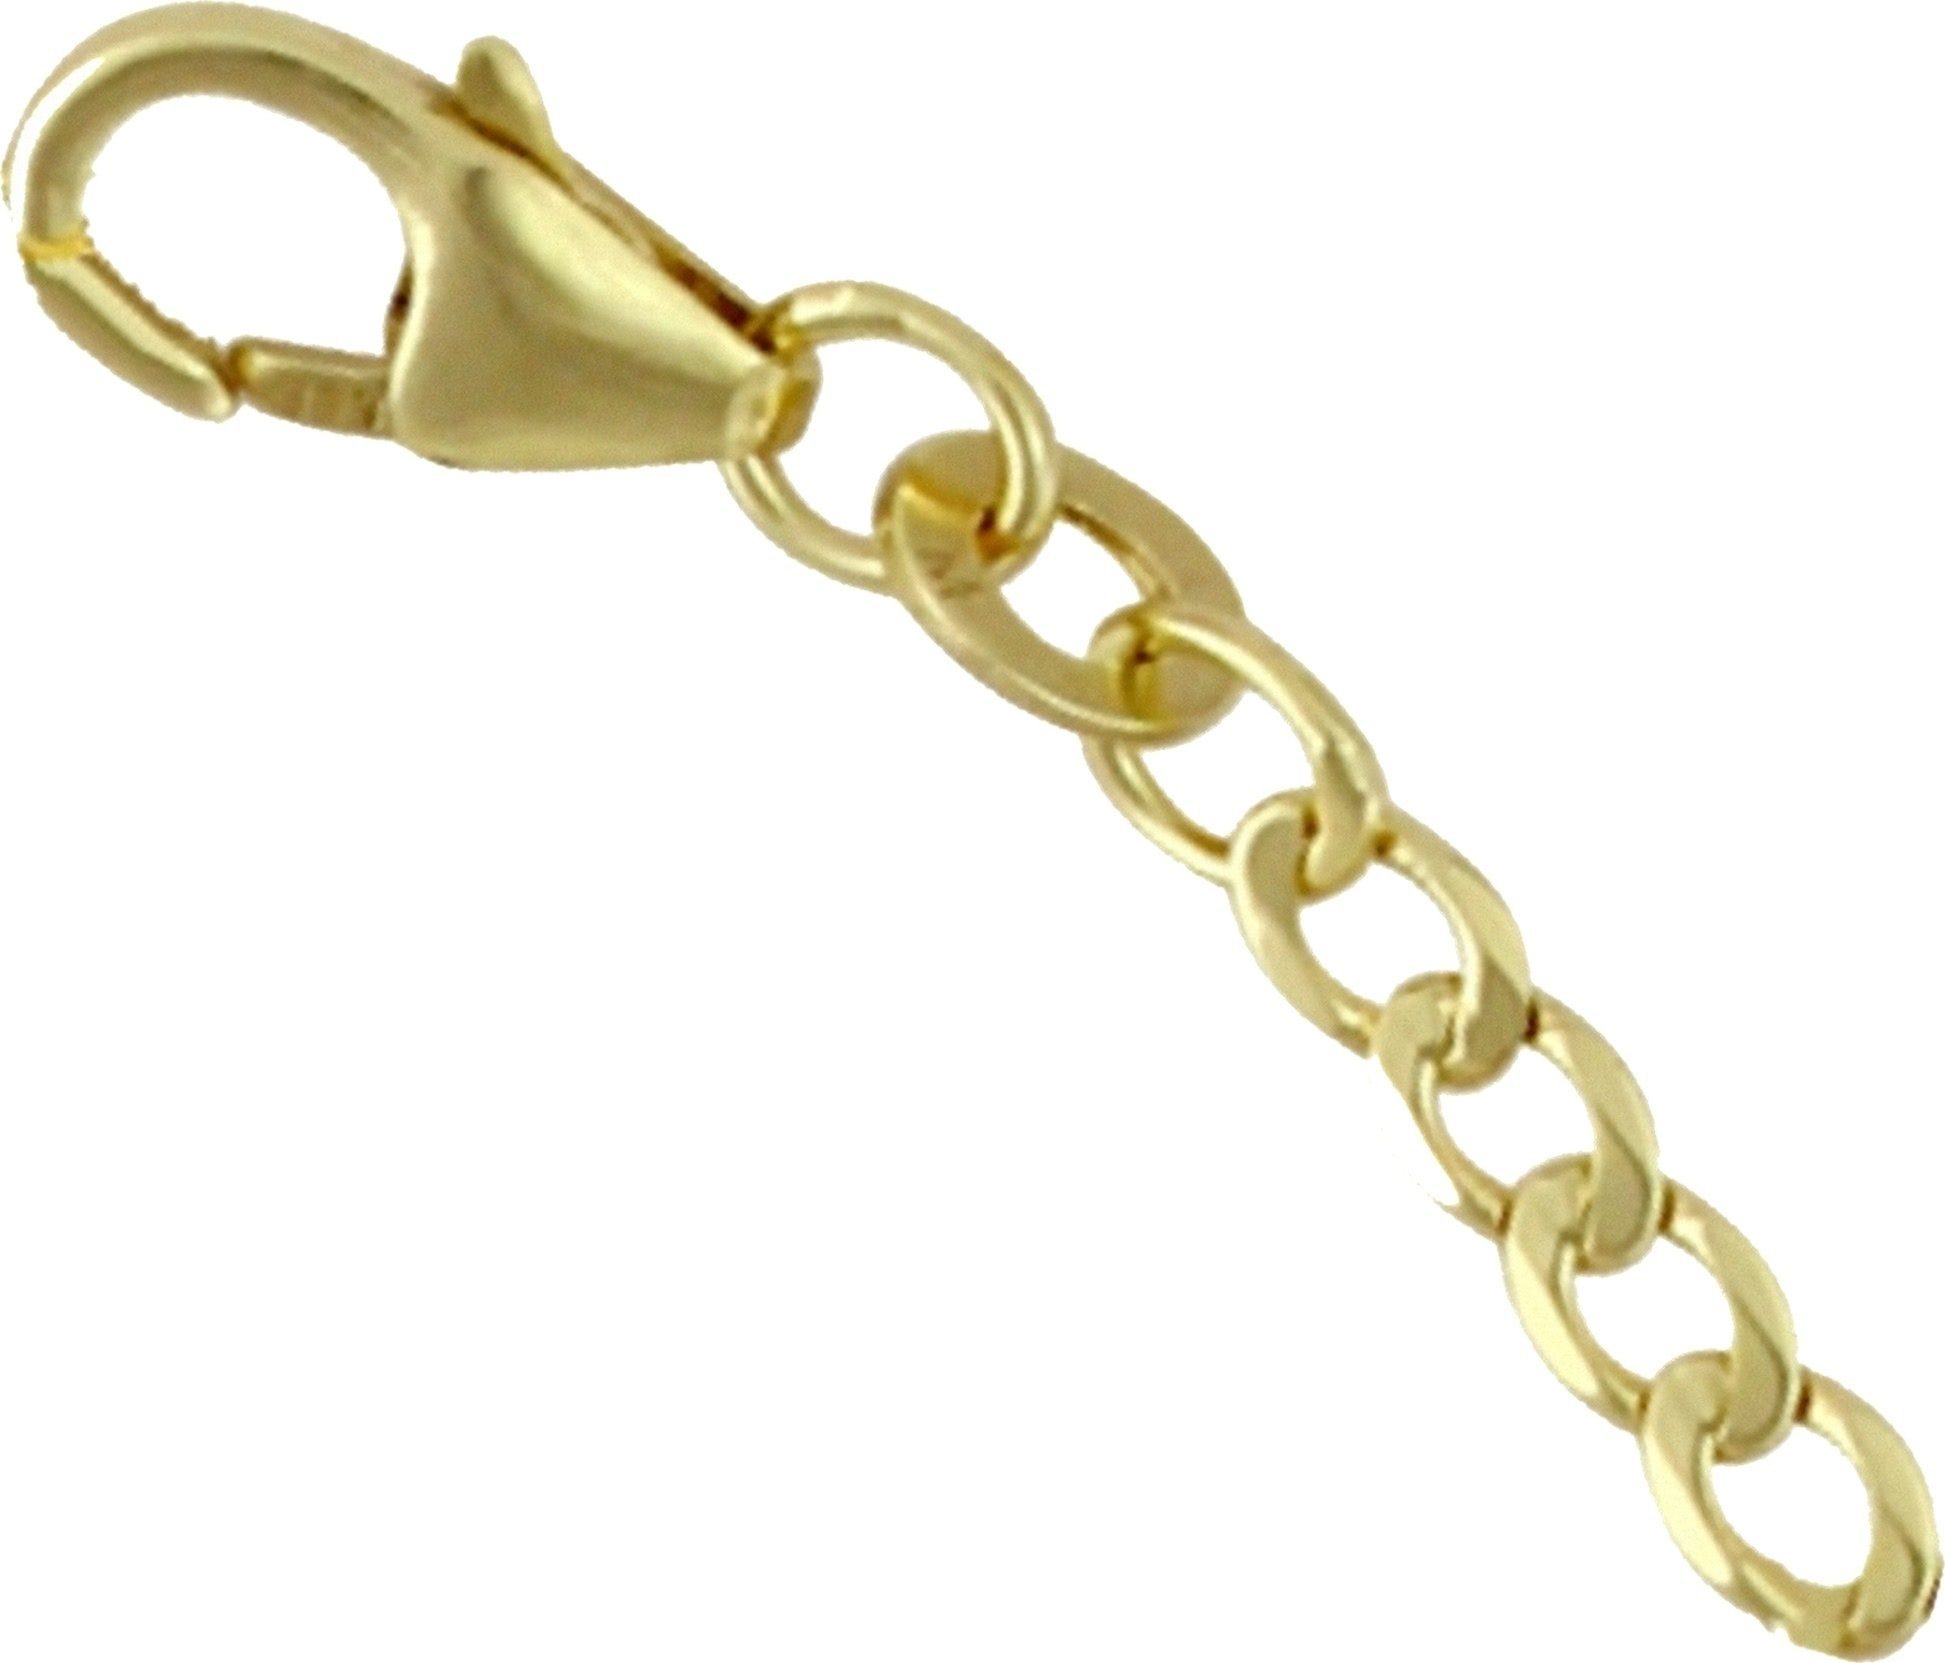 GoldDream Kette mit Einhänger »GoldDream Verlängerungskette 3cm 333 Gold« ( Halskette), Damen Halsketten Verlängerung aus 333 Gelbgold - 8 Karat,  Farbe: gold